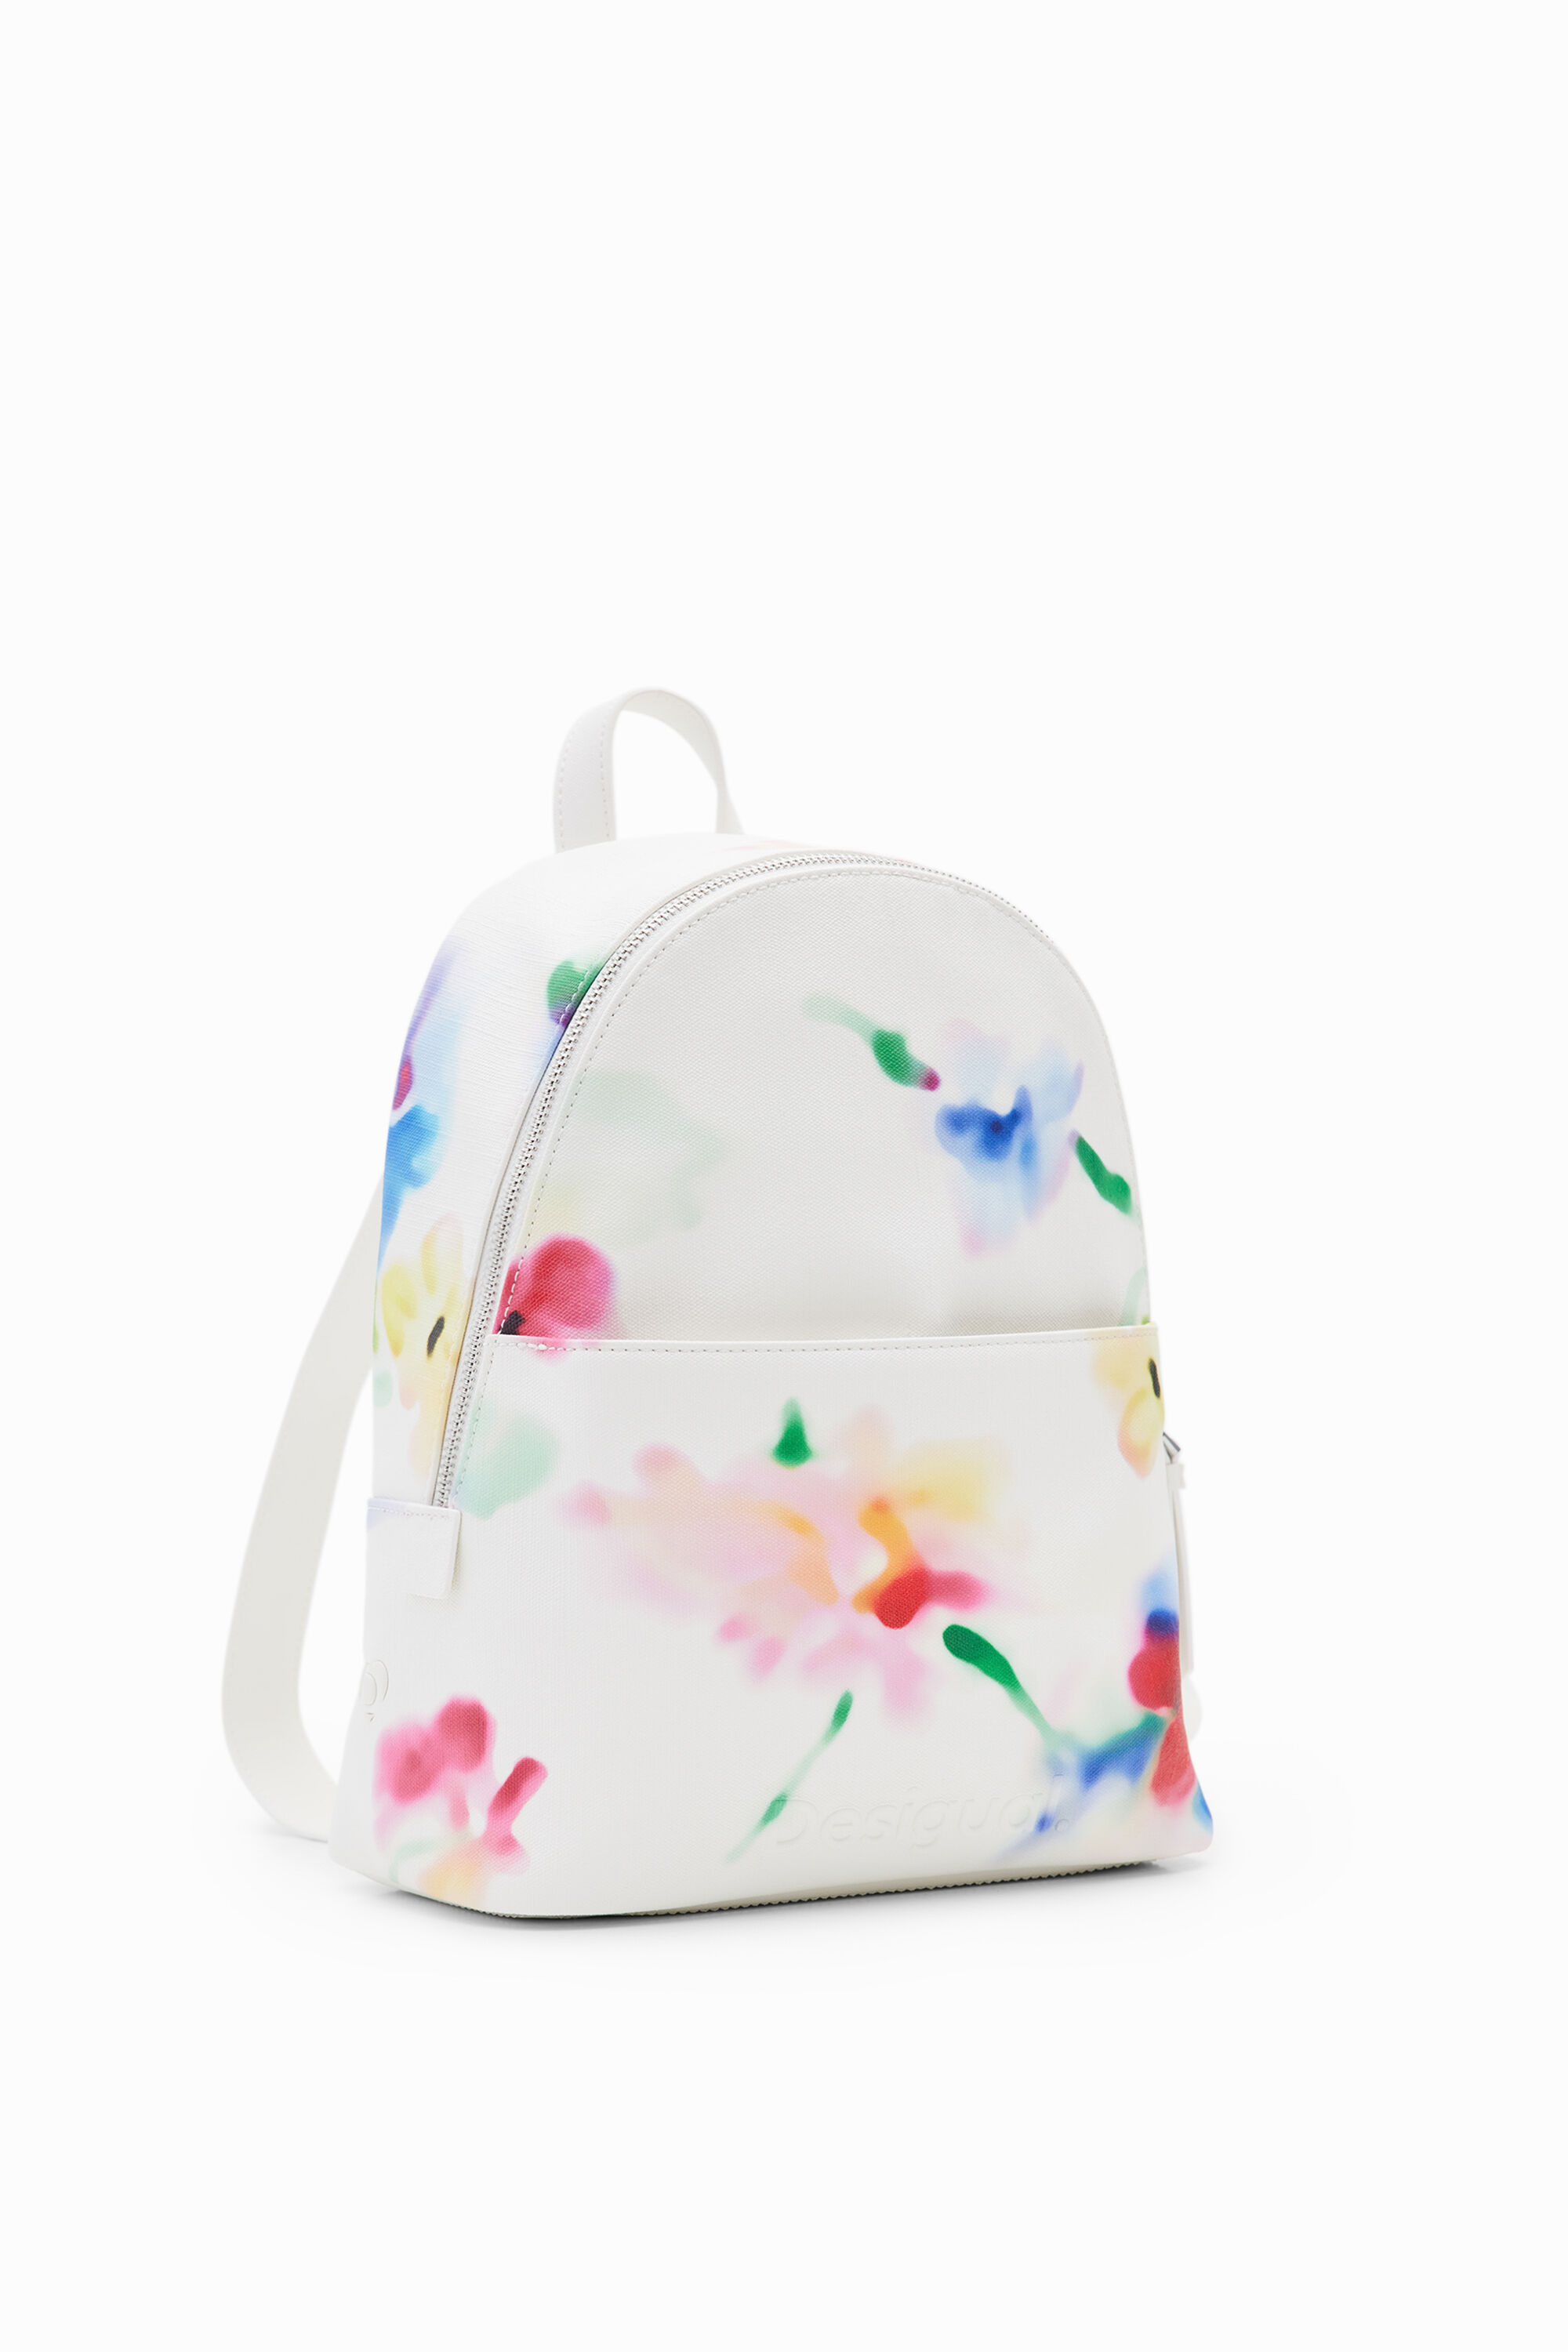 Desigual S floral backpack